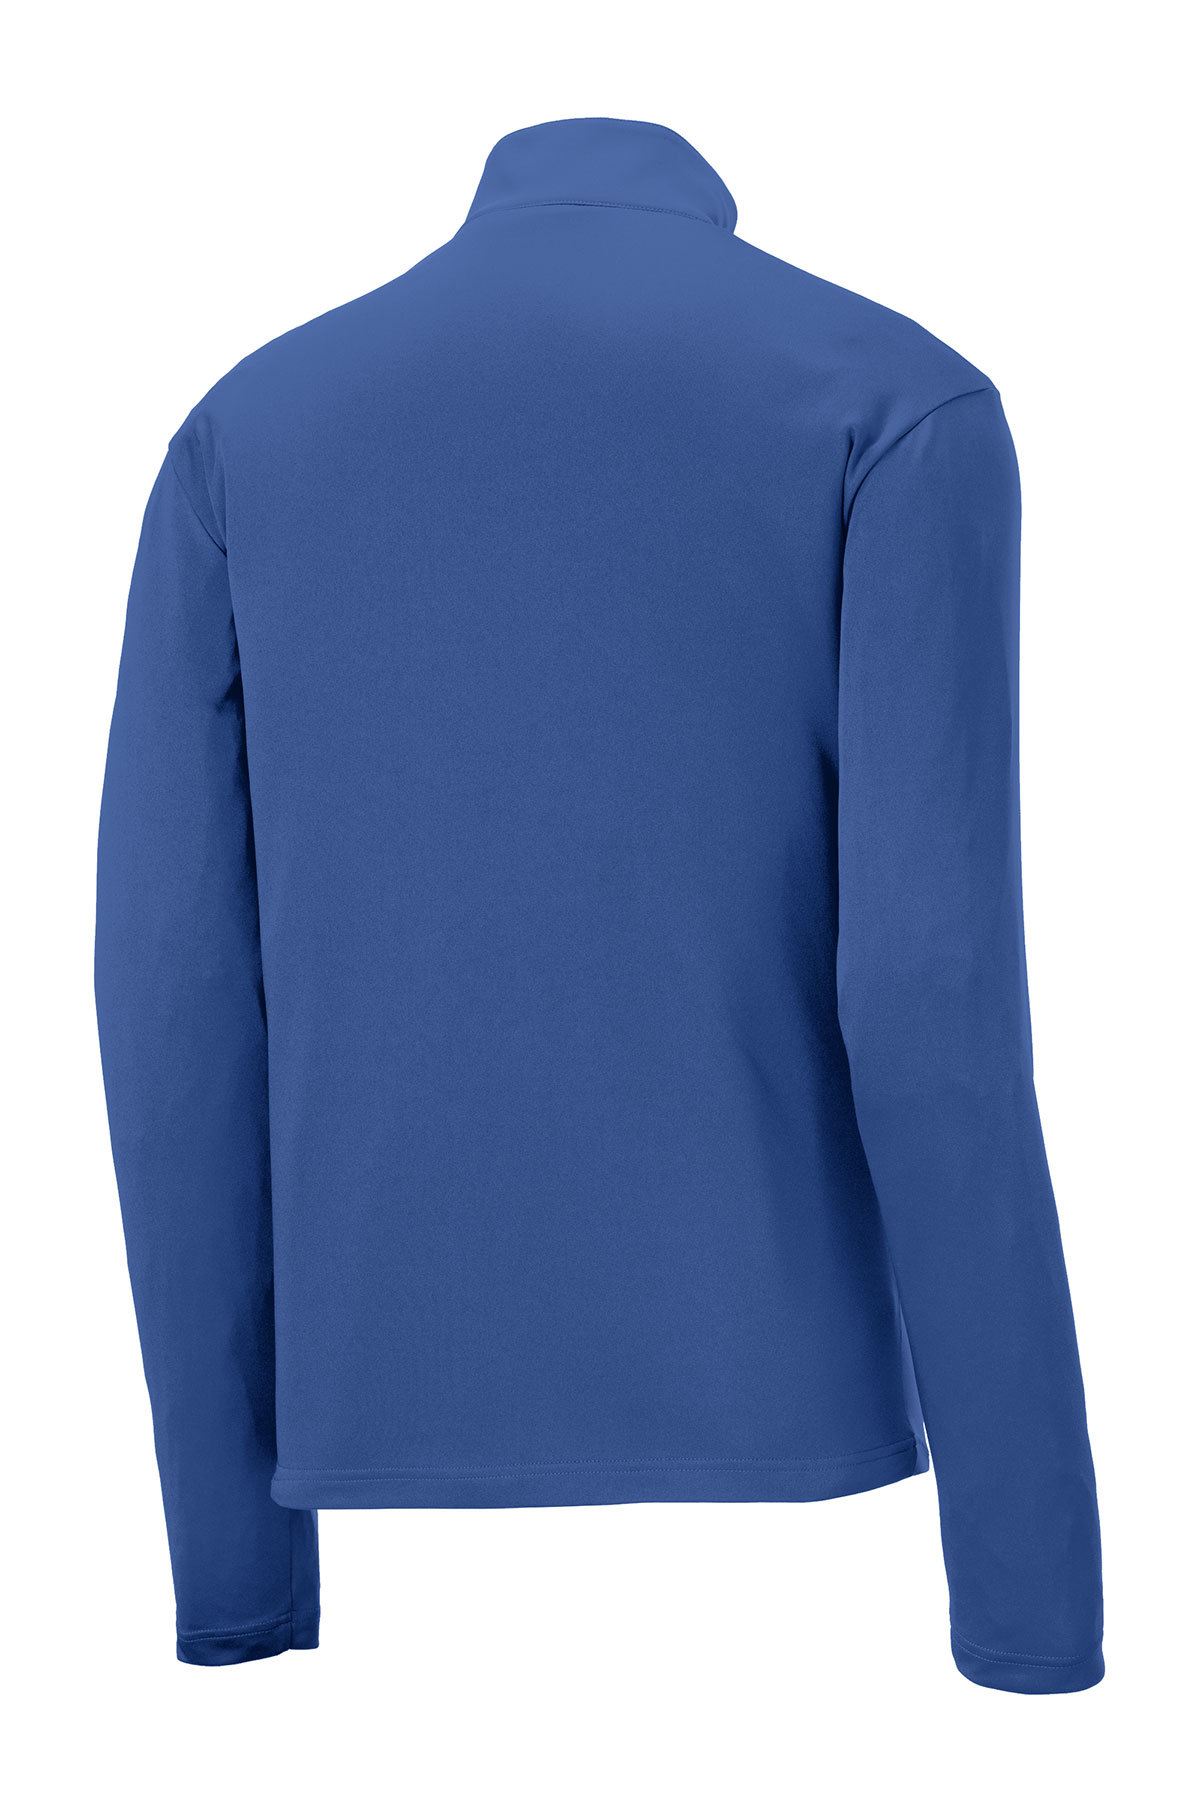 PPS Sport-Tek Posicharge 1/4 Zip Pullover Fleece